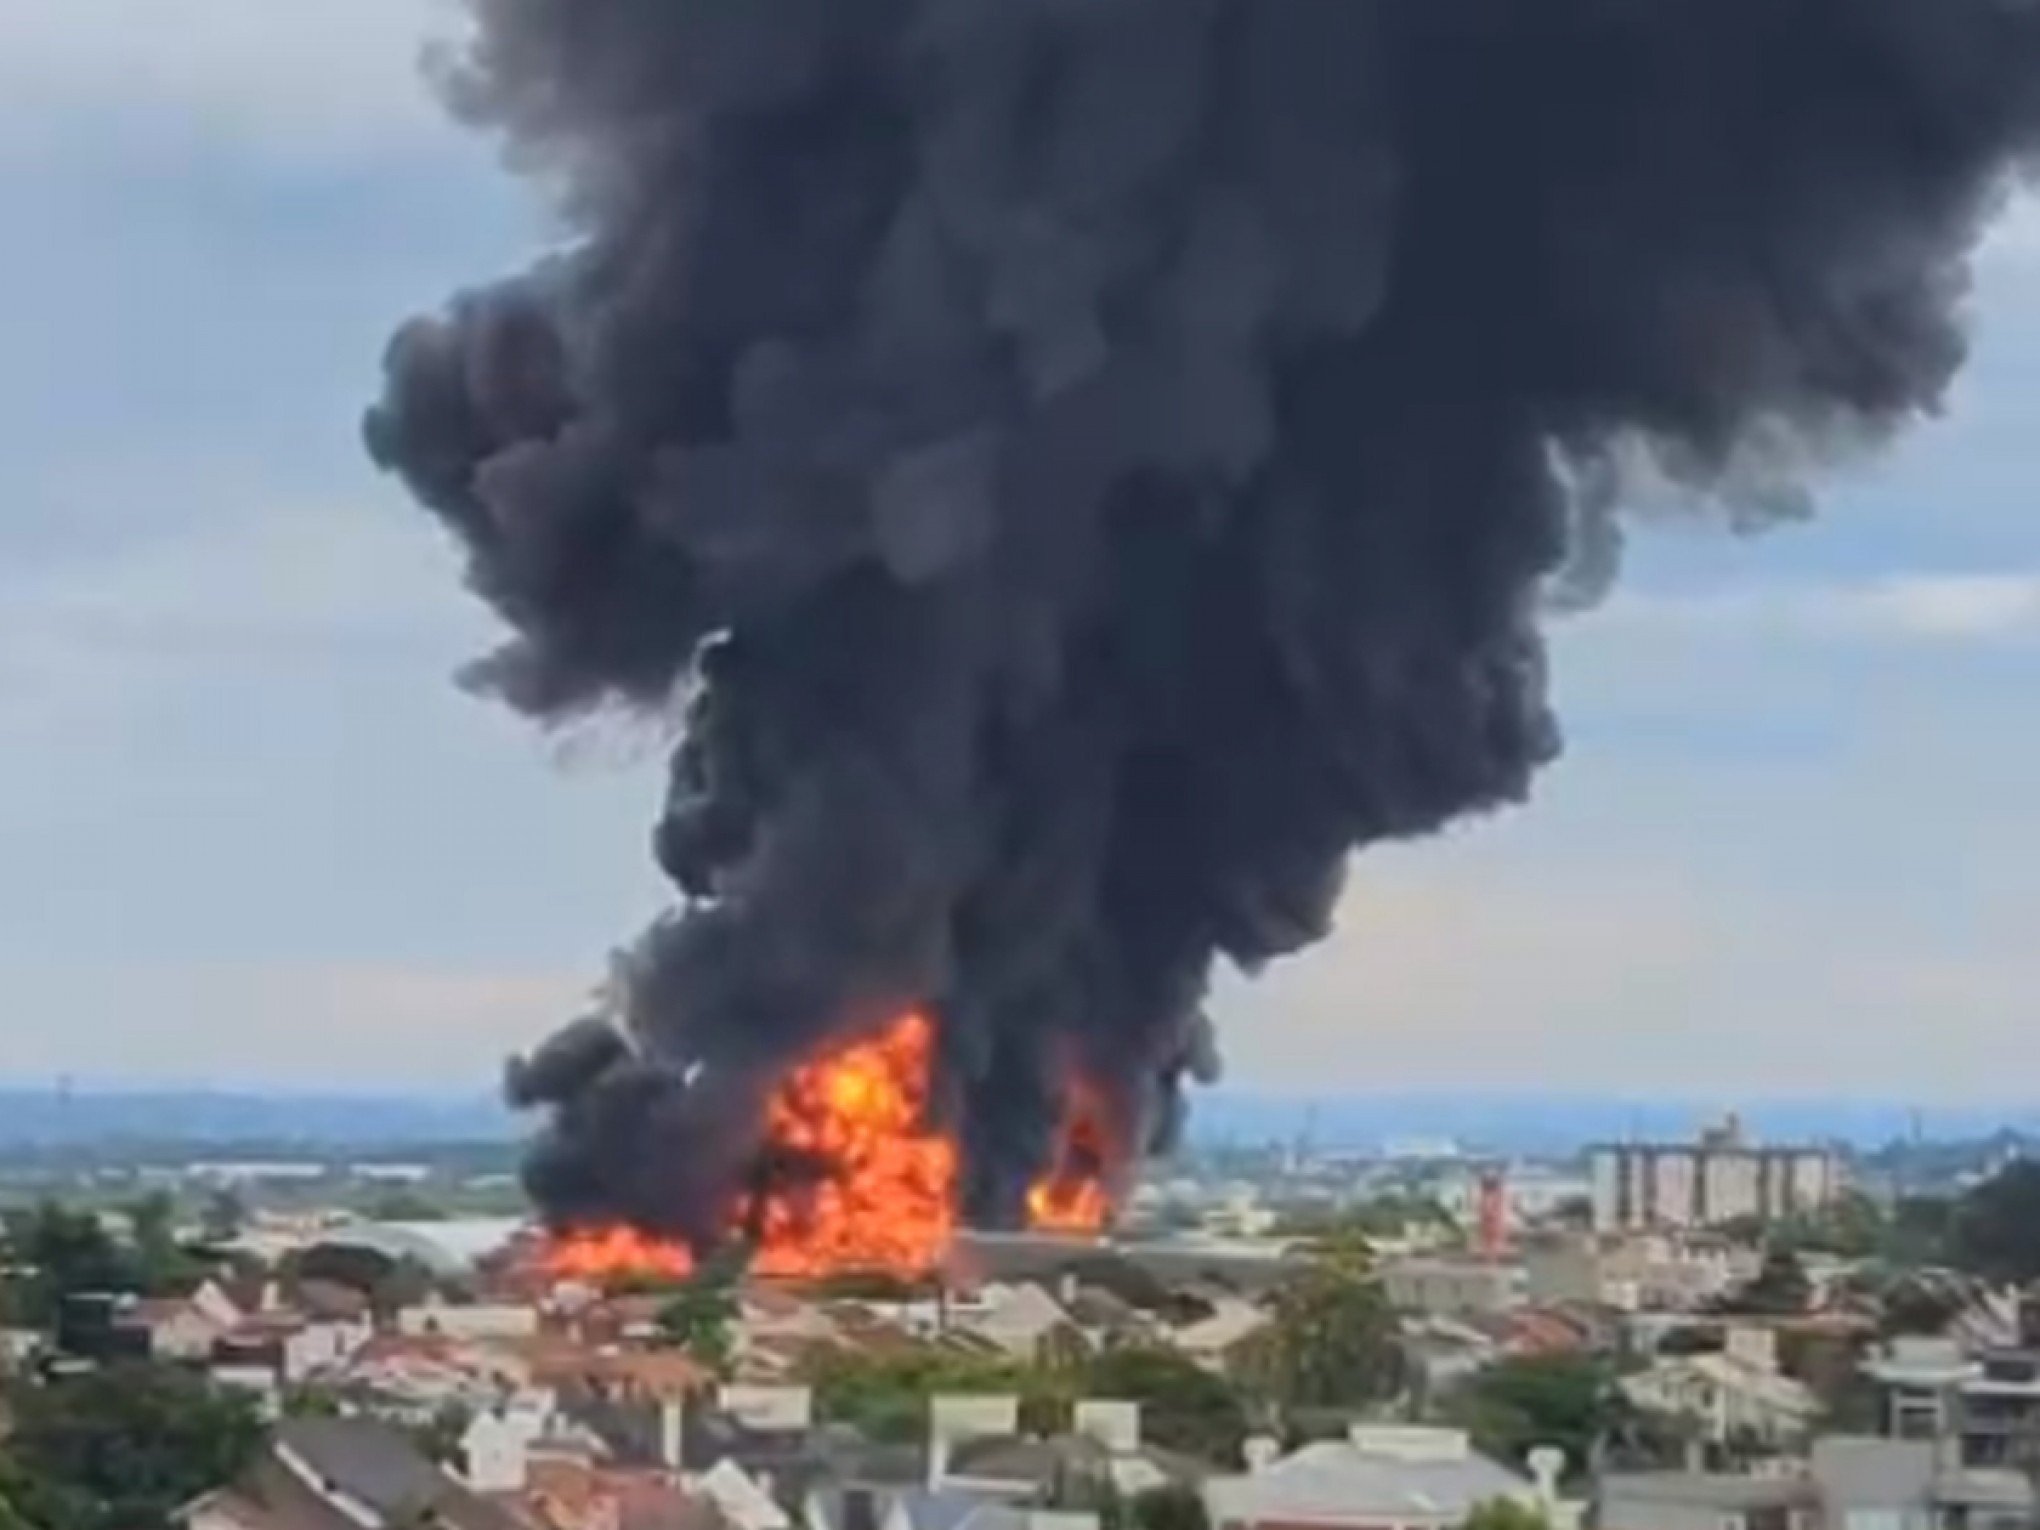 FOTOS: Veja imagens do incêndio que atinge centro de distribuição de indústria de plásticos em Canoas